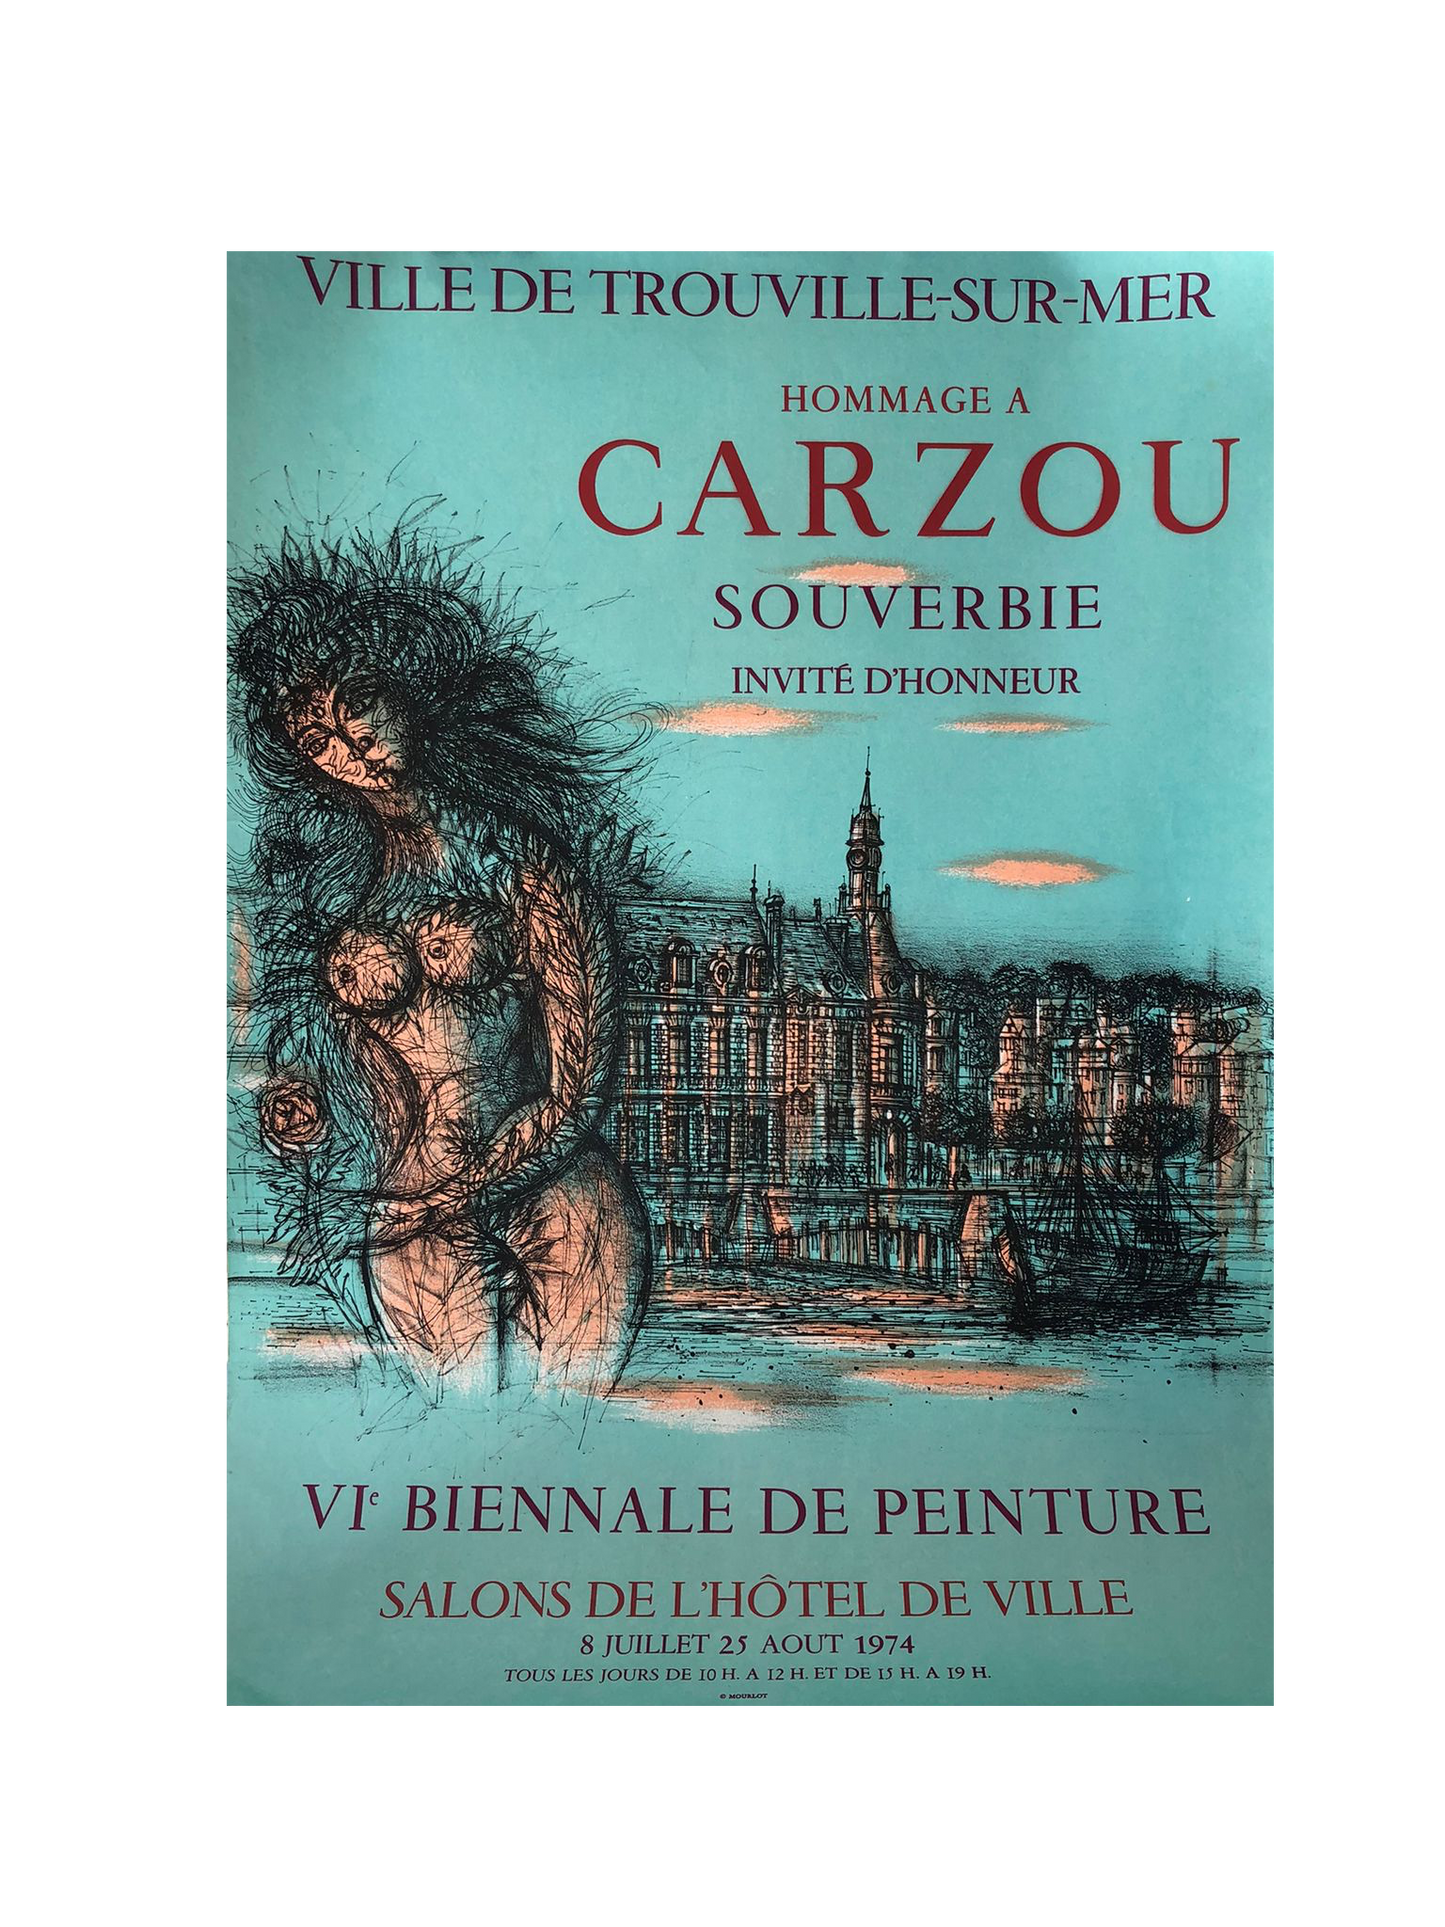 Carzou Exhibition Poster